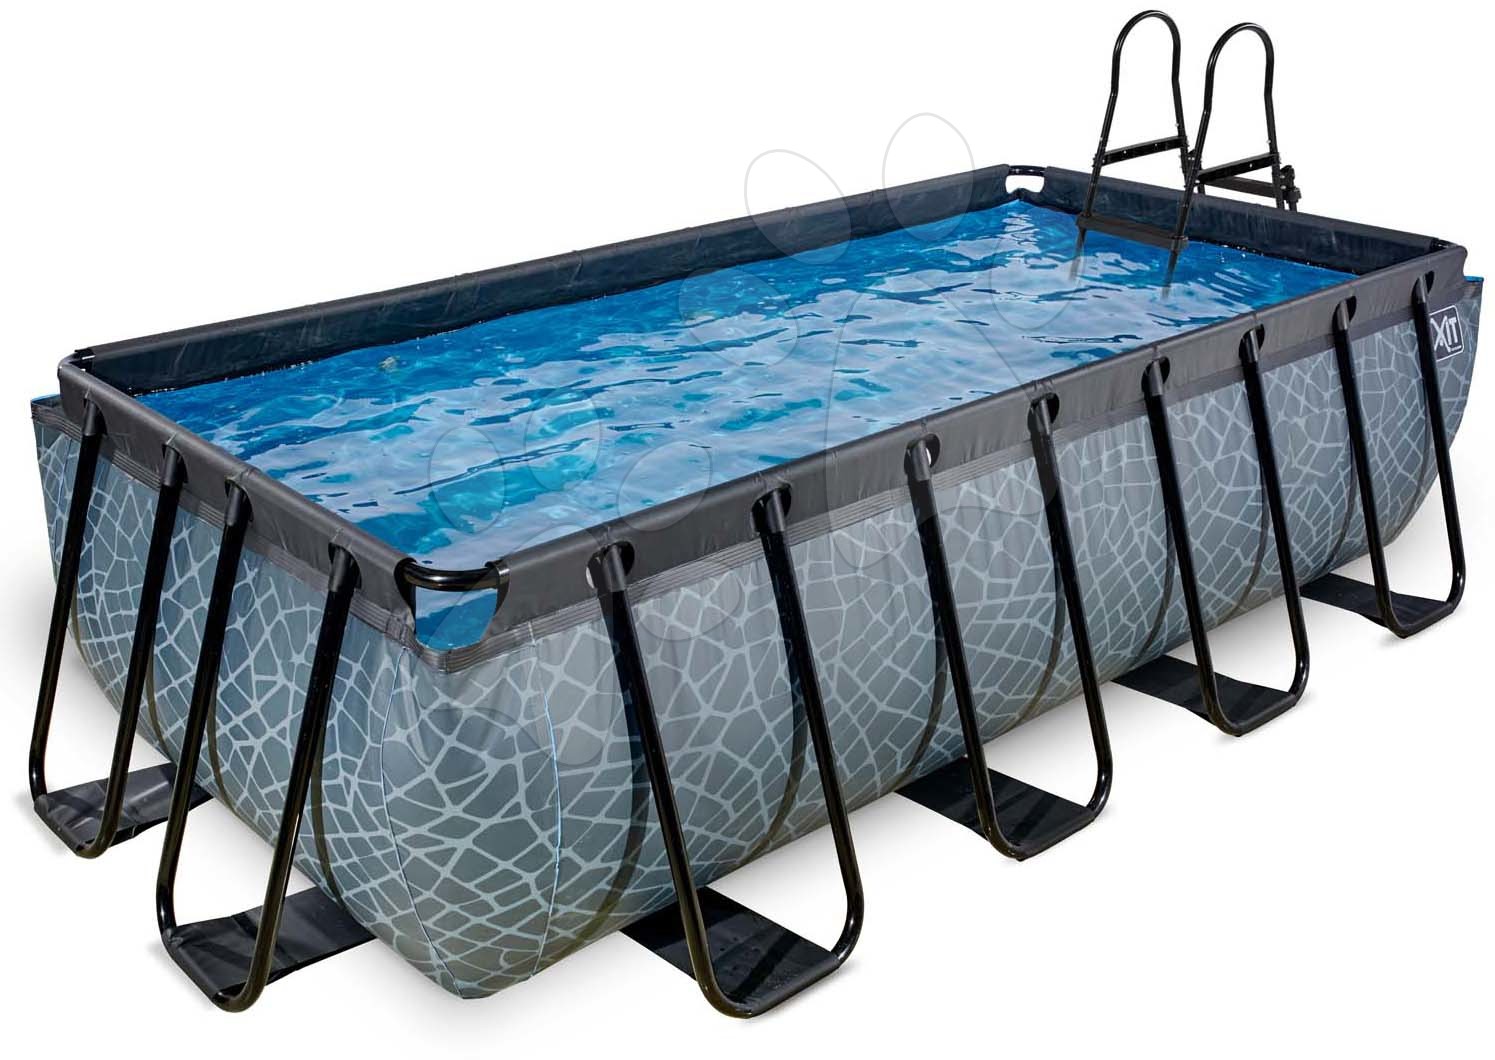 Bazén s pieskovou filtráciou Stone pool Exit Toys oceľová konštrukcia 400*200*100 cm šedý od 6 rokov